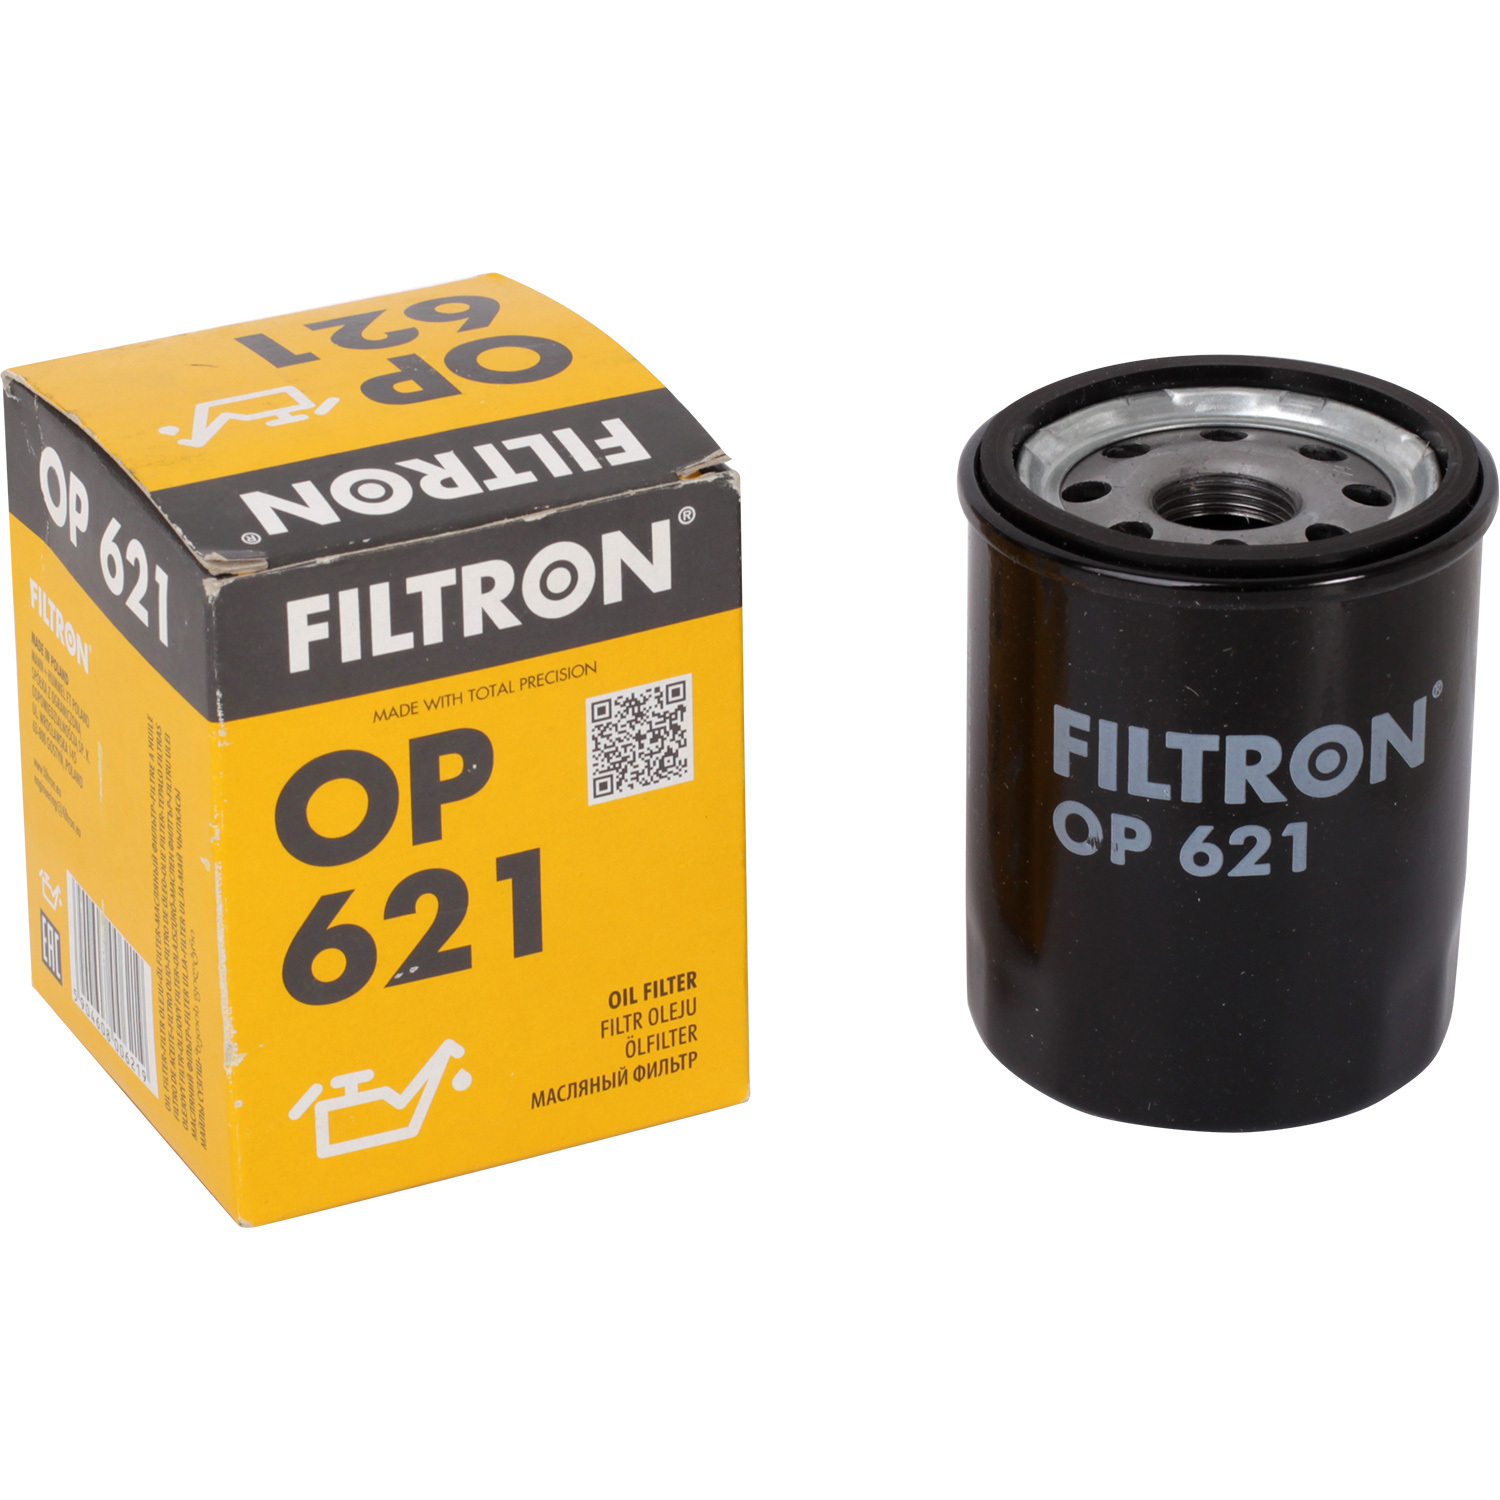 фильтры filtron фильтр масляный filtron op5452 Фильтры Filtron Фильтр масляный Filtron OP621